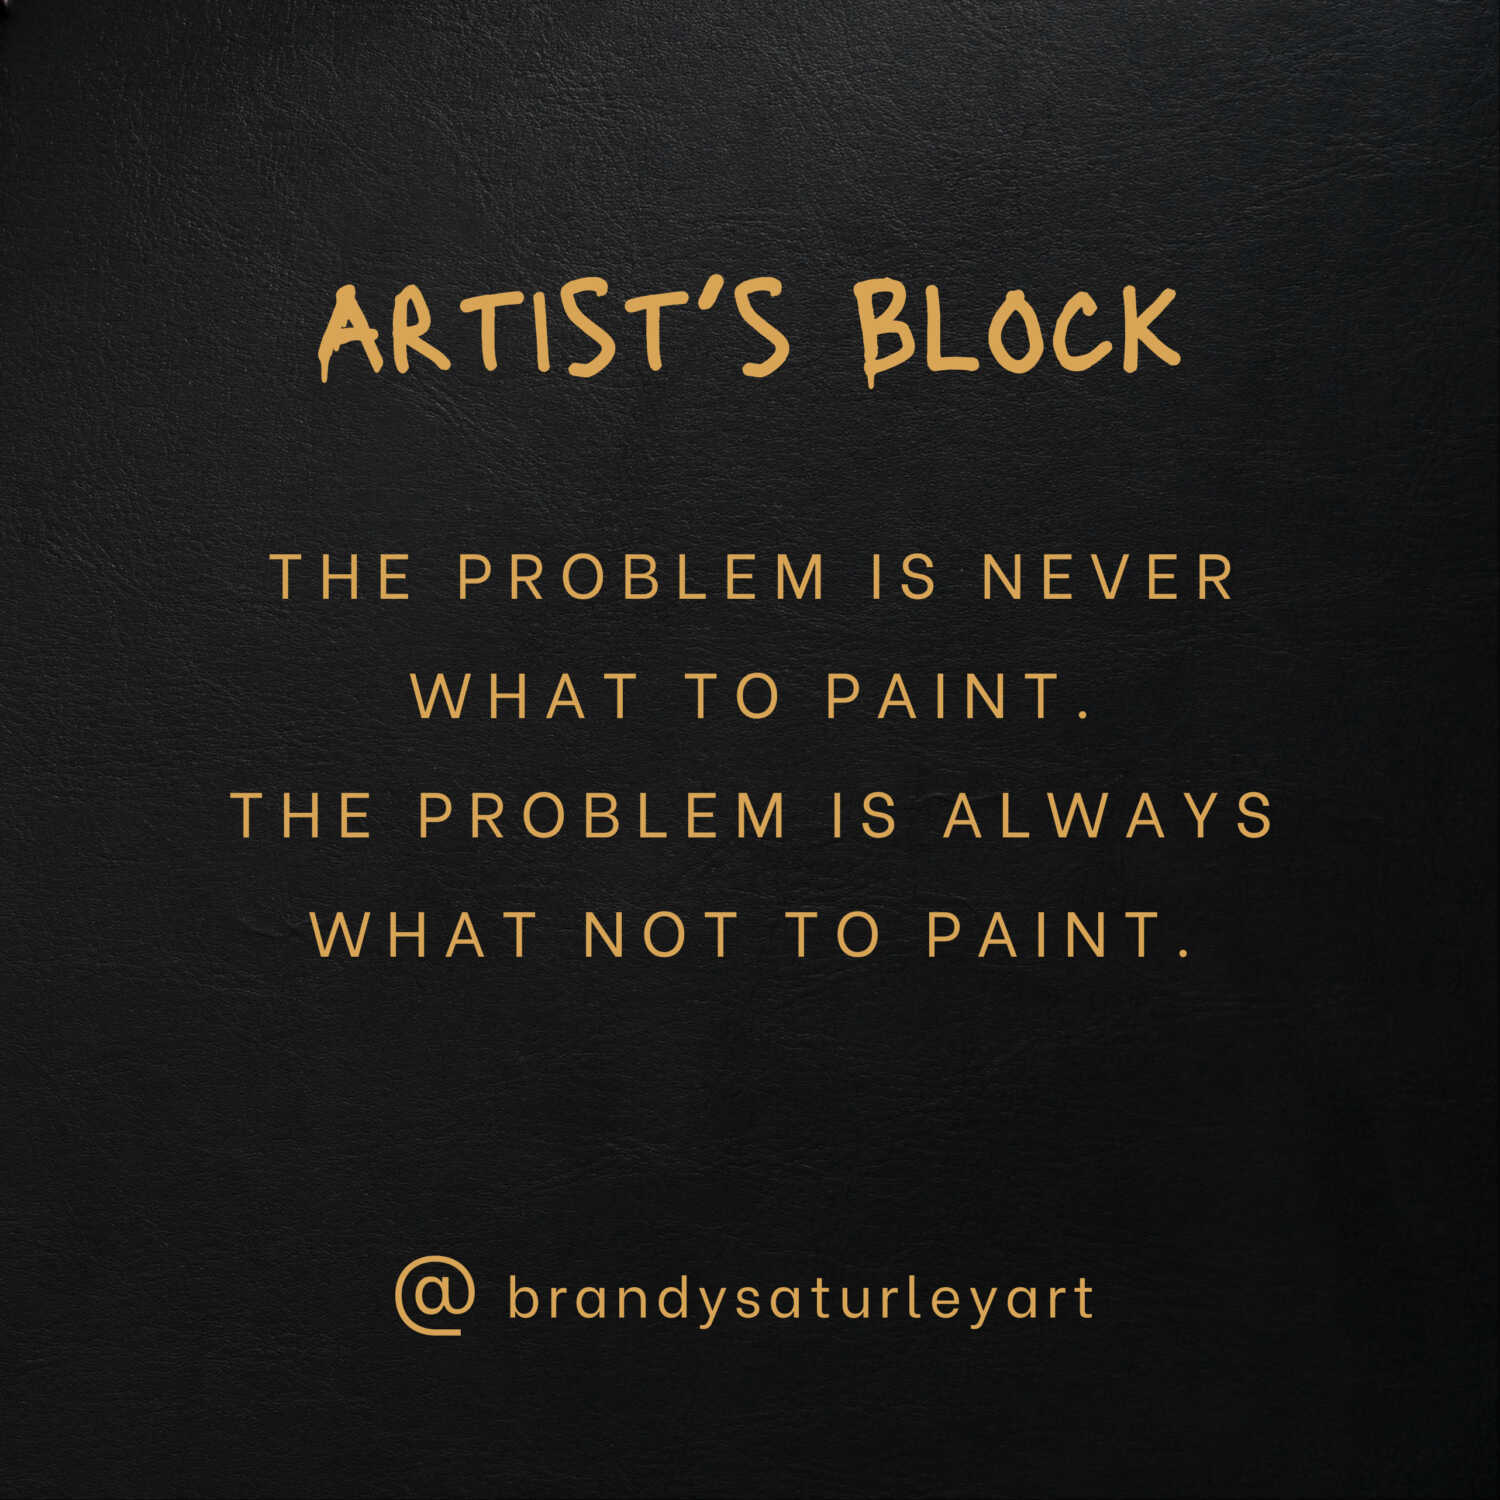 Artist's Block Explained